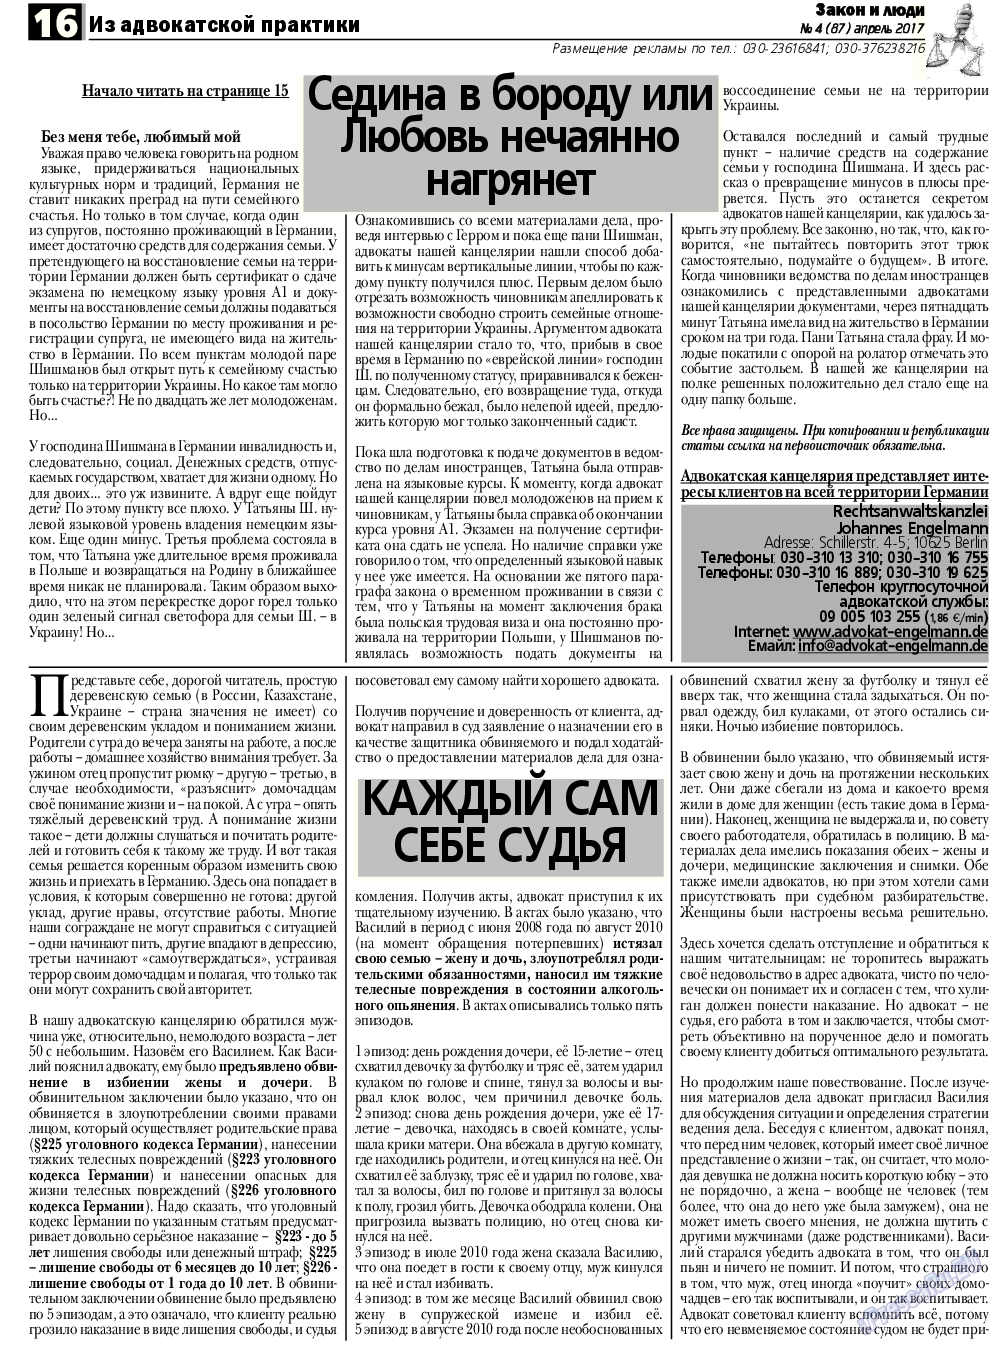 Закон и люди, газета. 2017 №4 стр.16